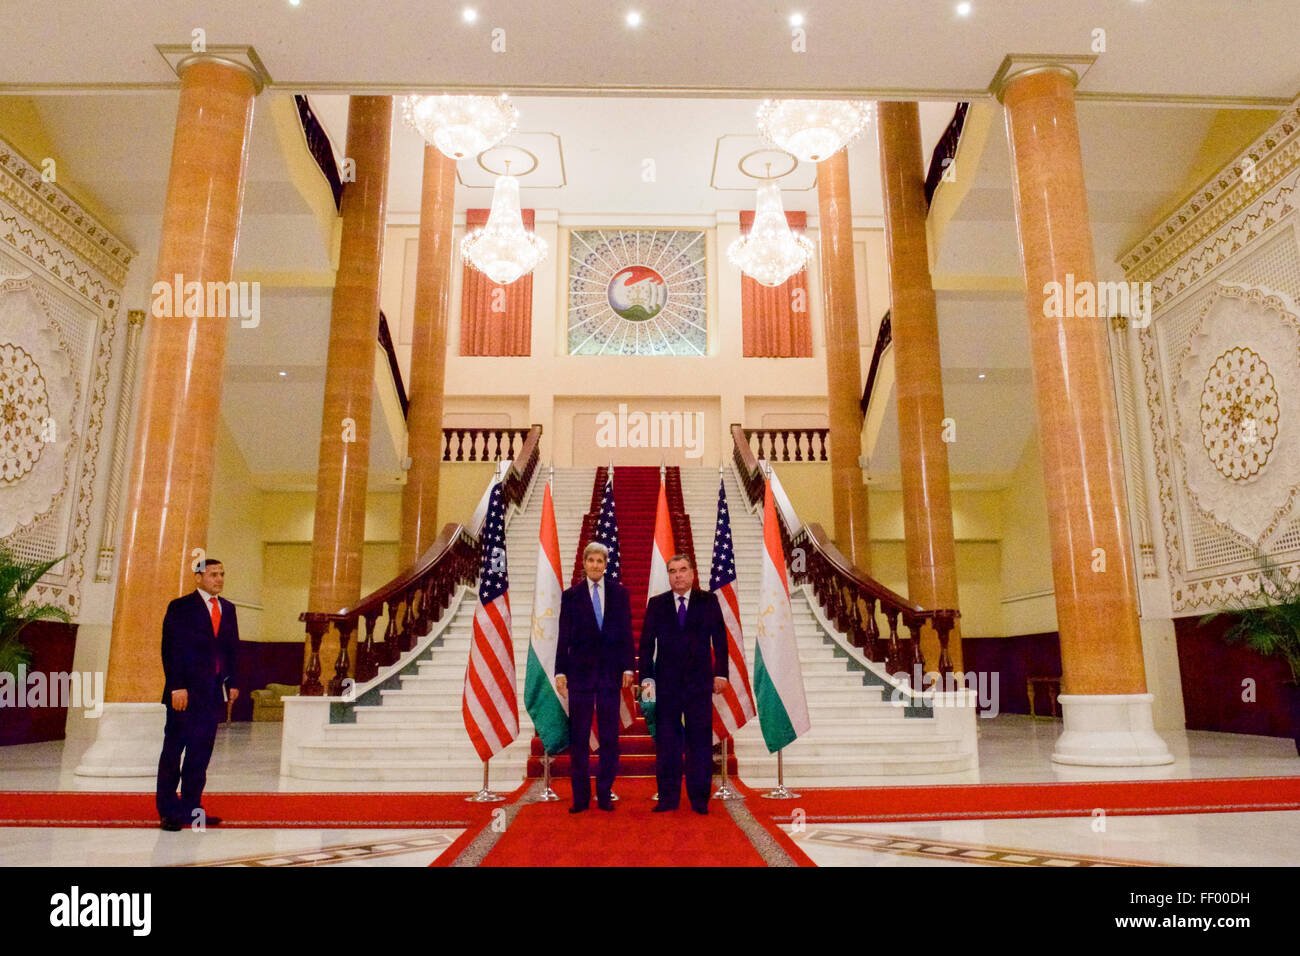 Резиденция президента Таджикистана внутри